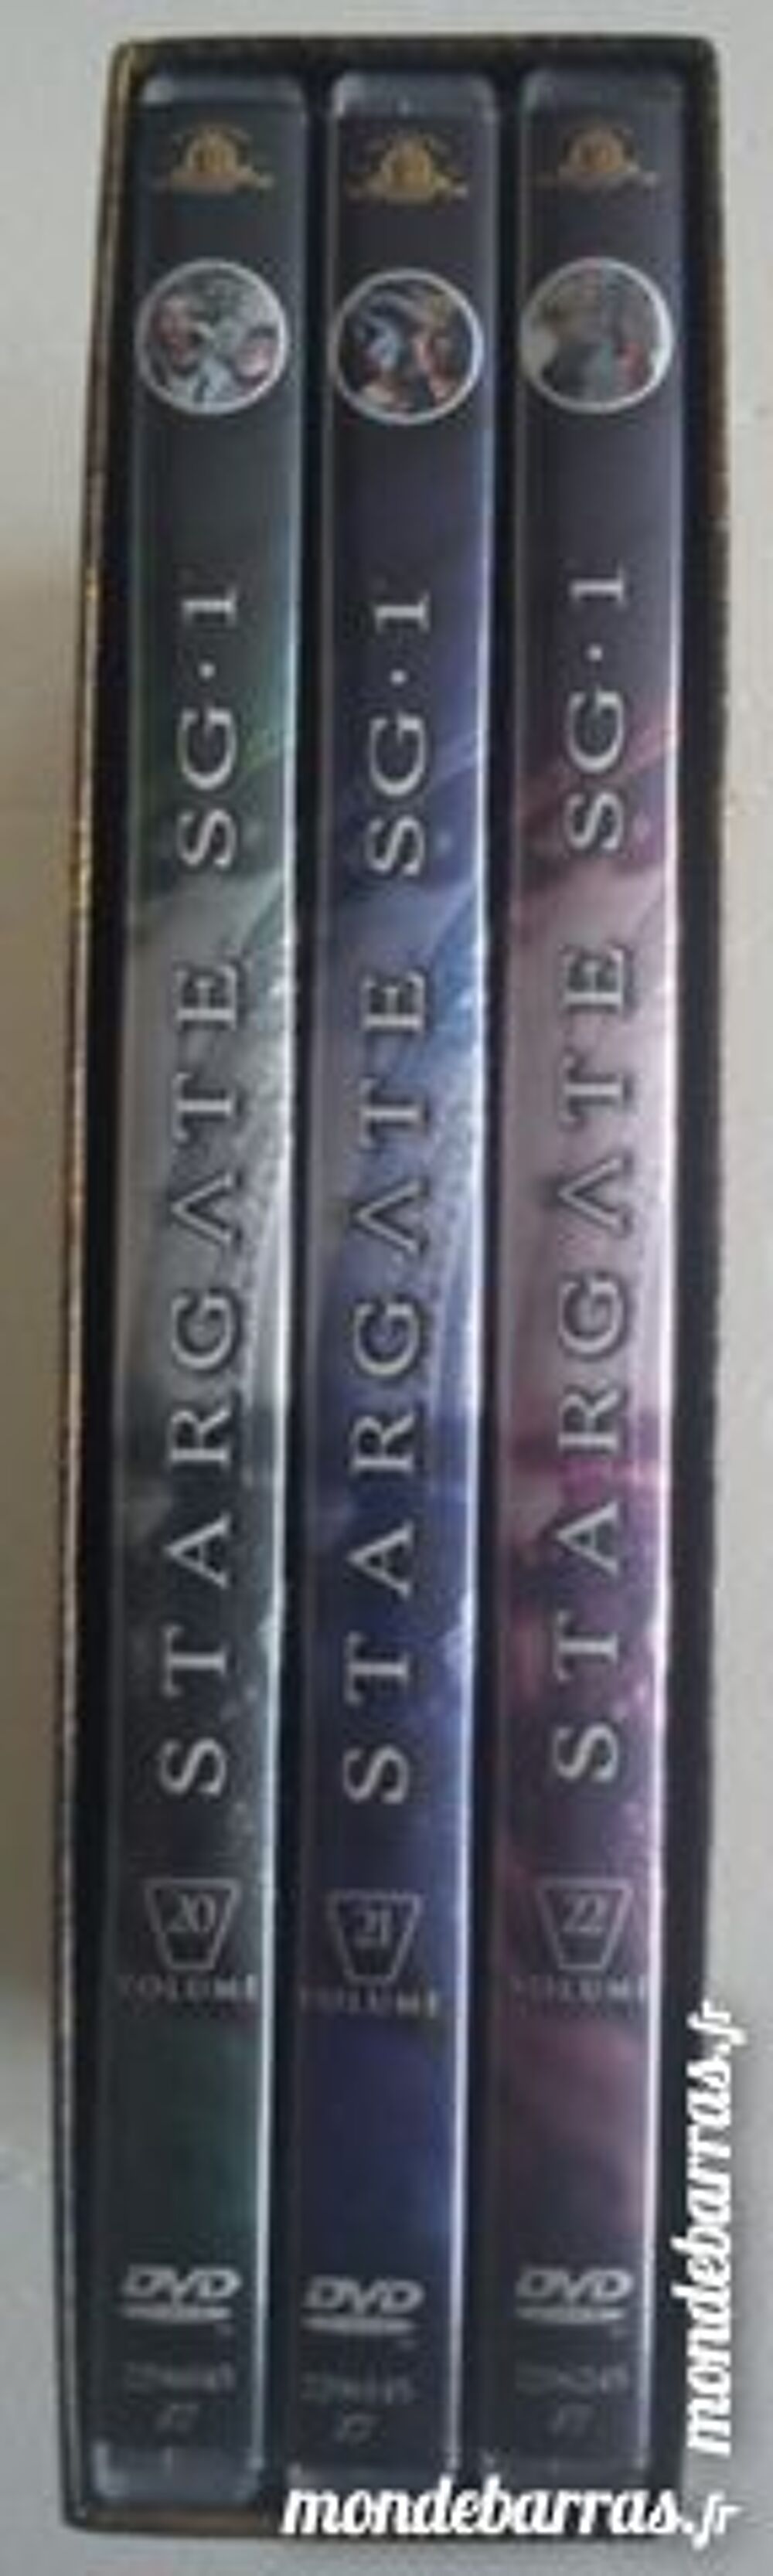 Coffret 3 DVD &laquo;Stargate SG-1&raquo; Saison 5 1&egrave;re partie DVD et blu-ray